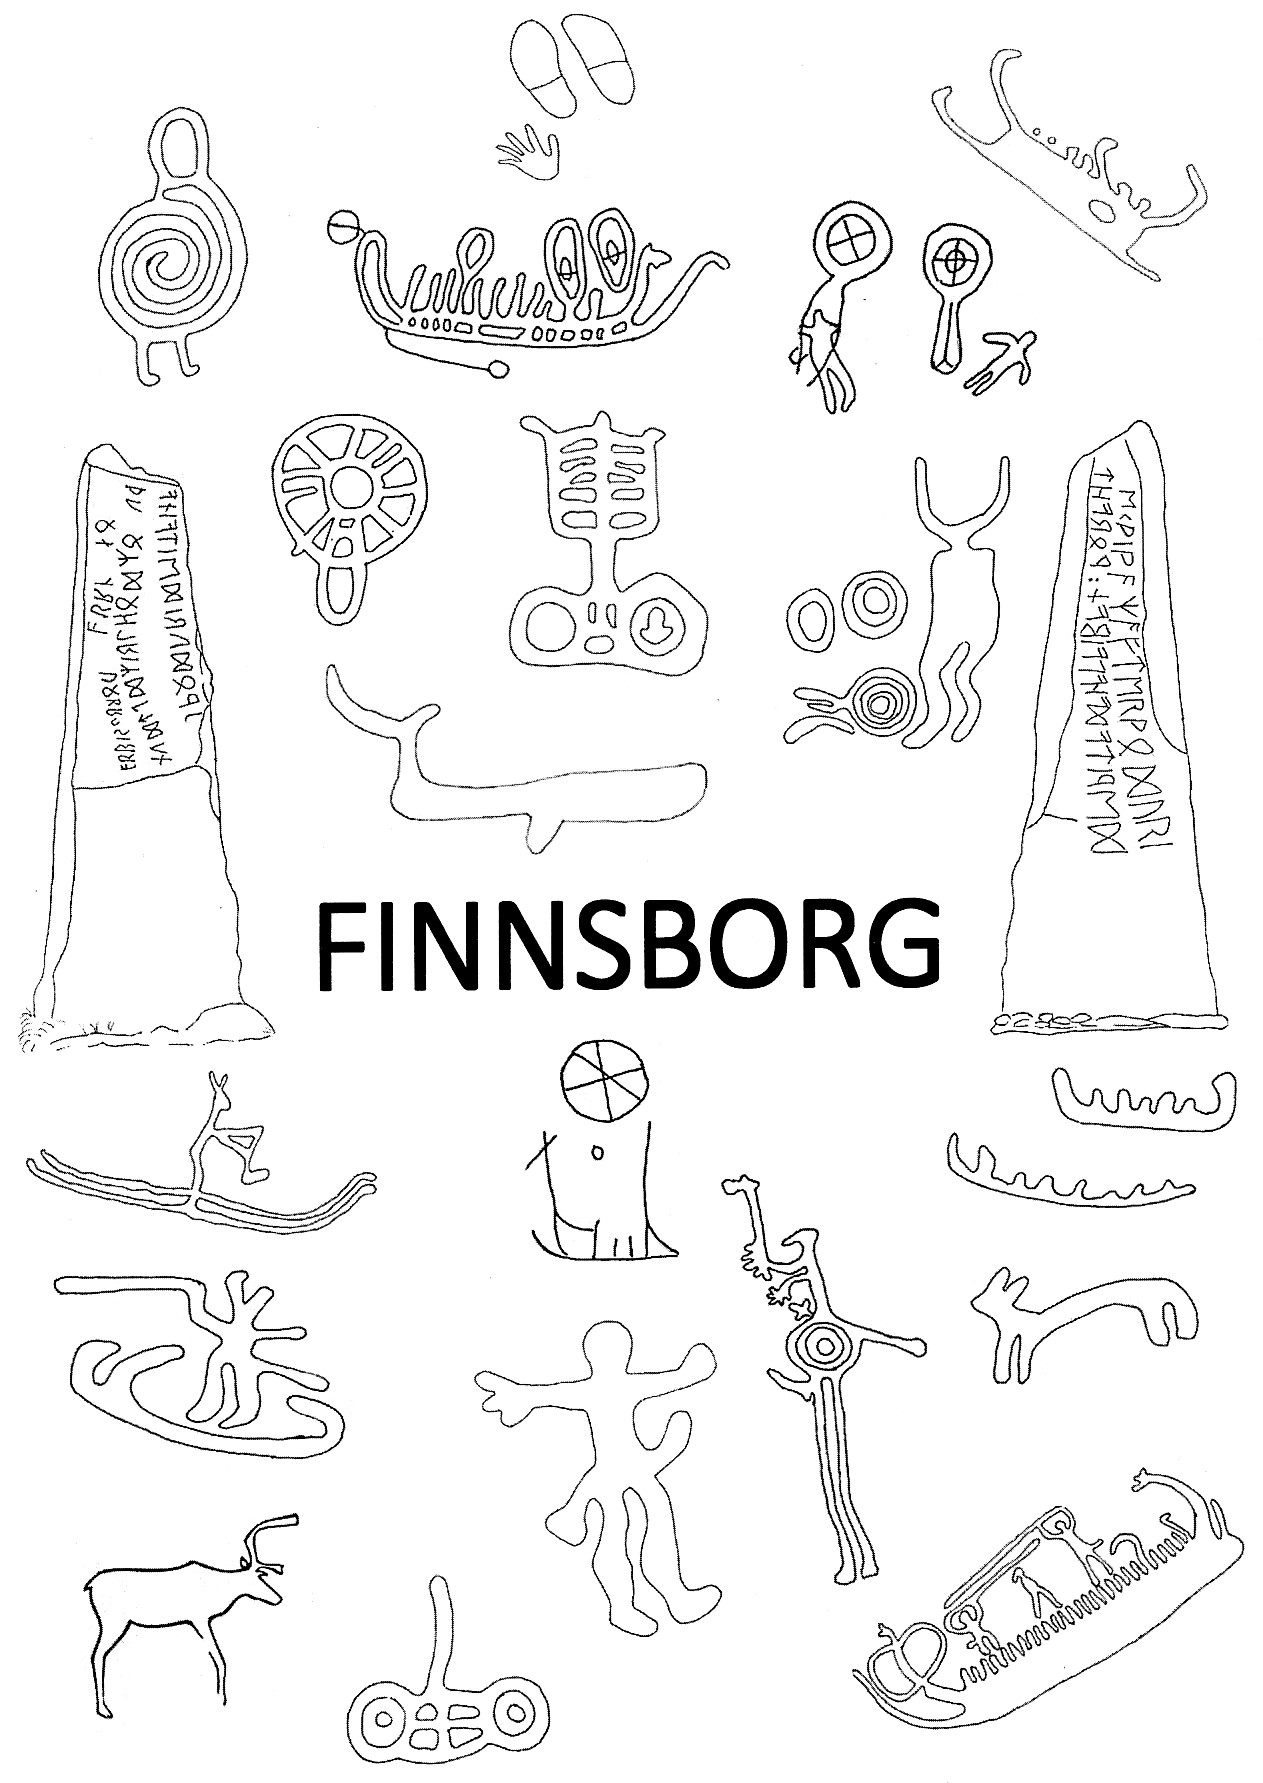 Finnsborg